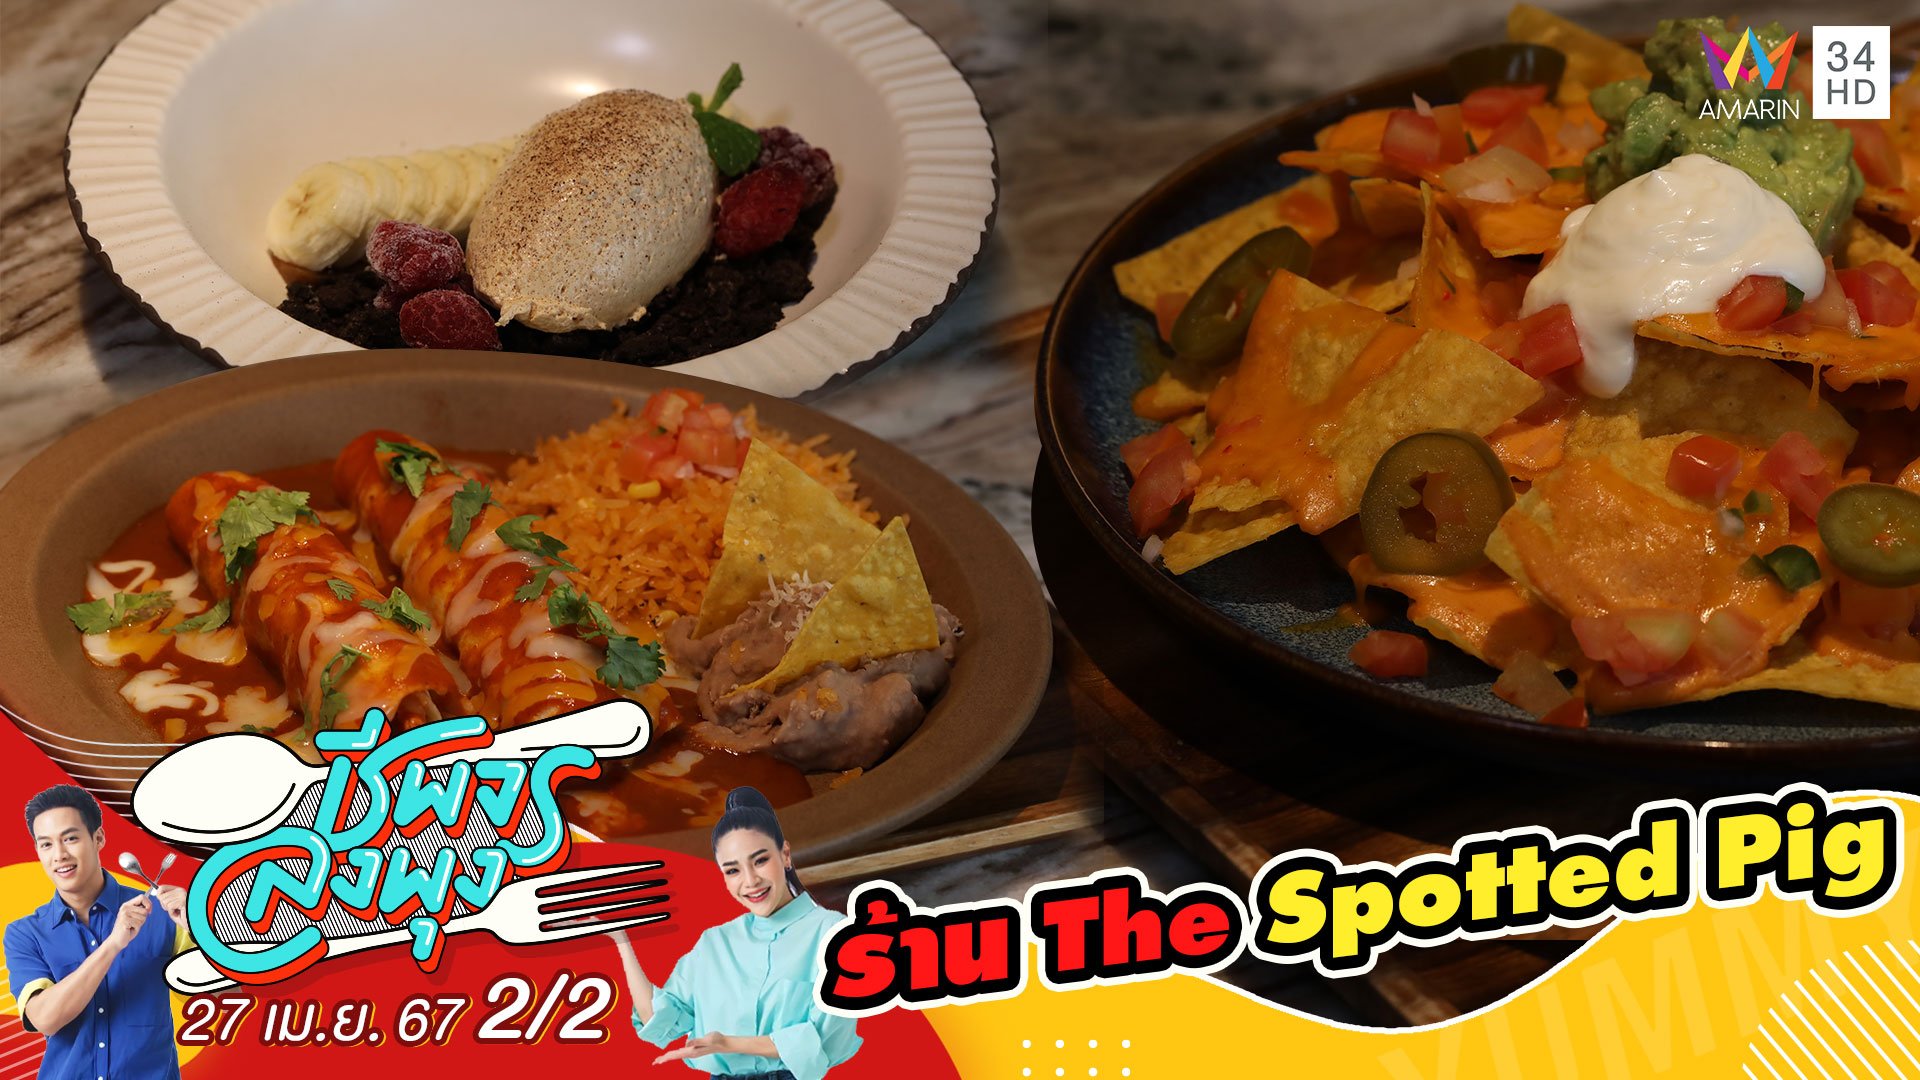 "ร้าน The Spotted Pig" ร้านอาหารเม็กซิกันสไตล์อเมริกัน | ชีพจรลงพุง | 27 เม.ย. 67 (2/2) | AMARIN TVHD34